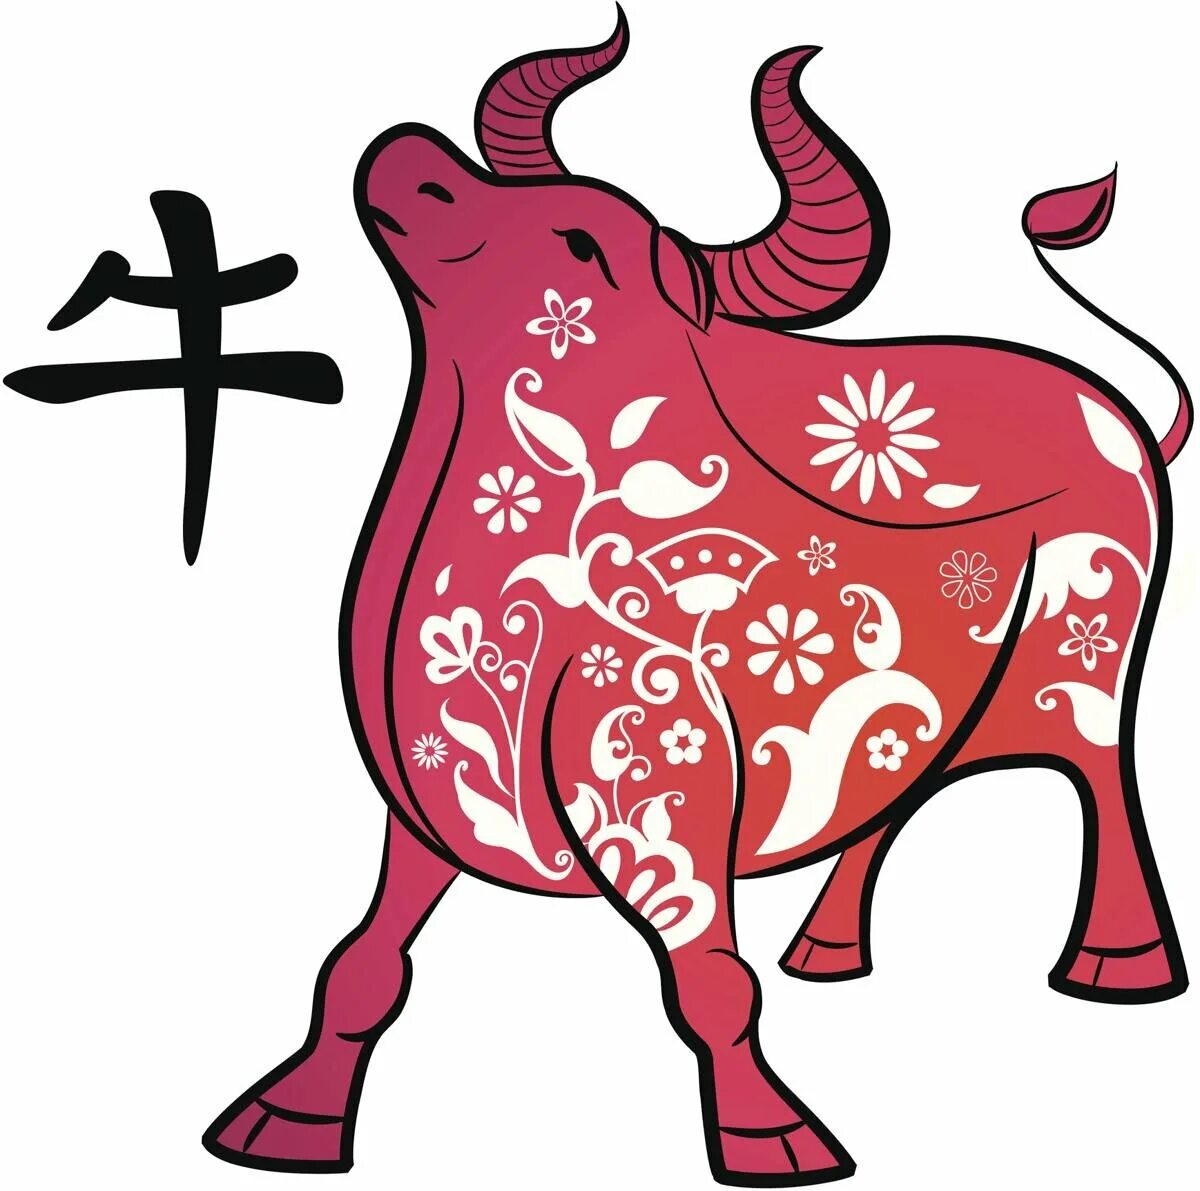 Показать символ года. Знак китайского зодиака бык. Символ года - бык. Китайские символы года.